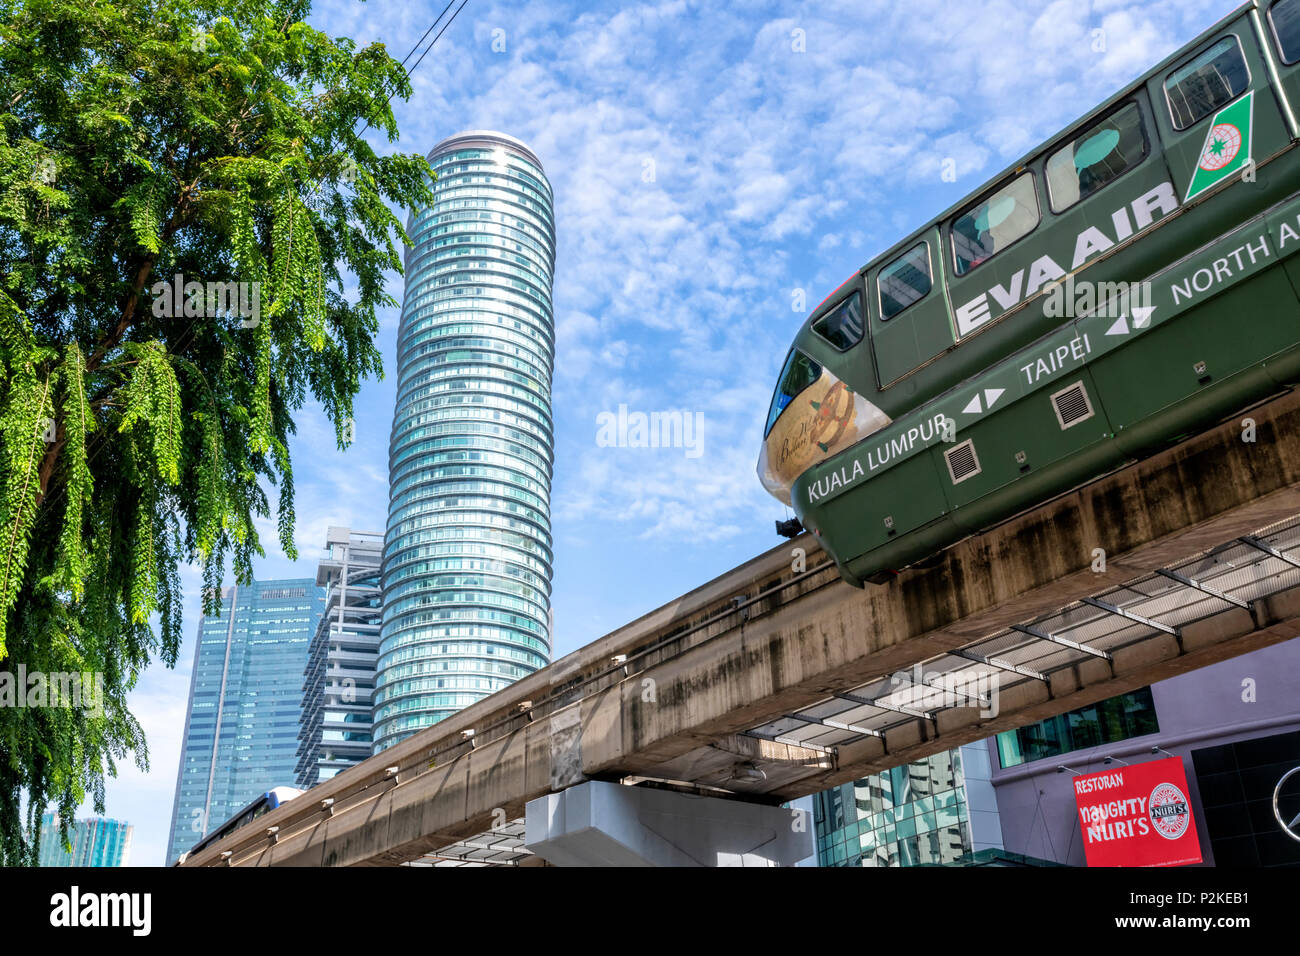 Un monorail automobile passe au-dessus d'une route principale dans le centre de Kuala Lumpur, Malaisie Banque D'Images